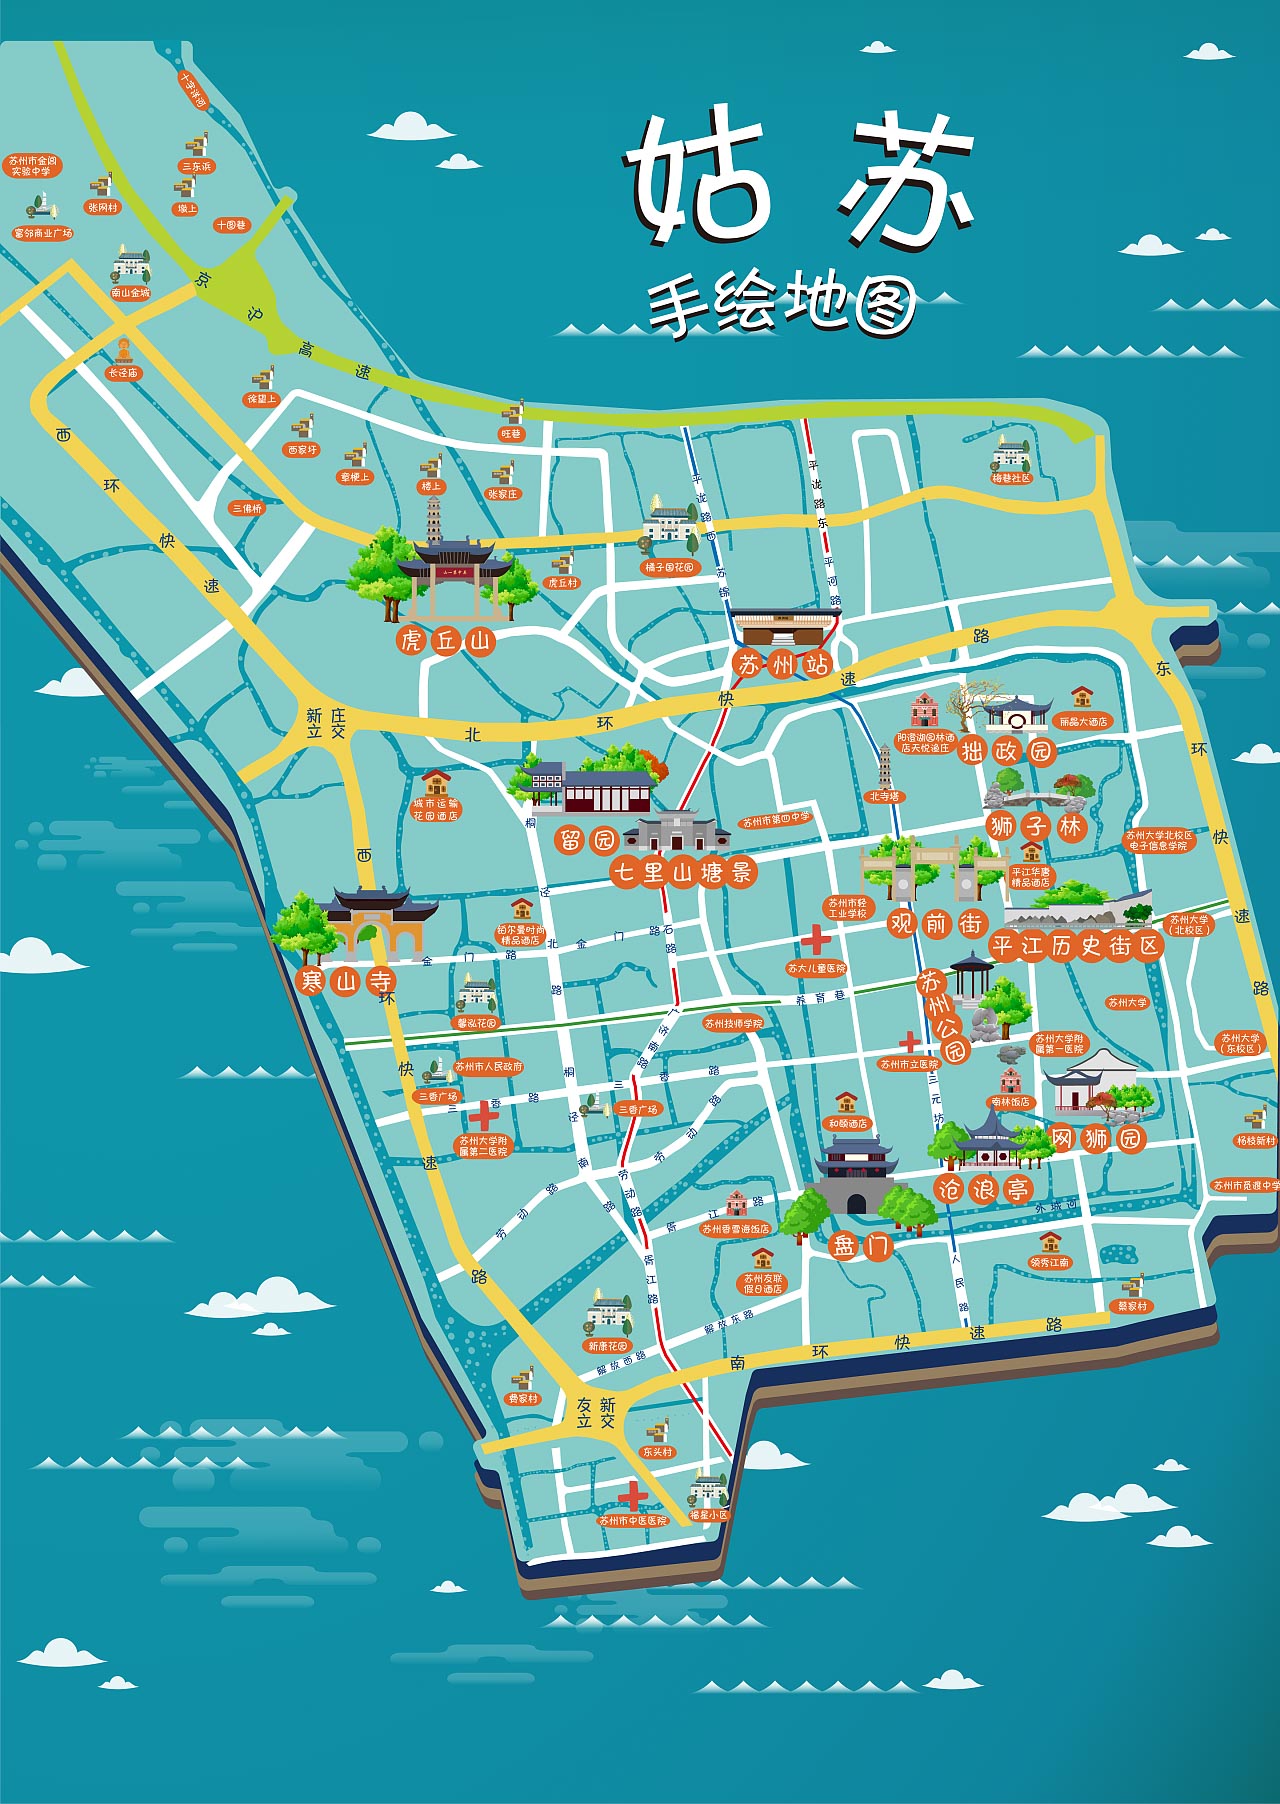 通海口镇手绘地图景区的文化宝藏